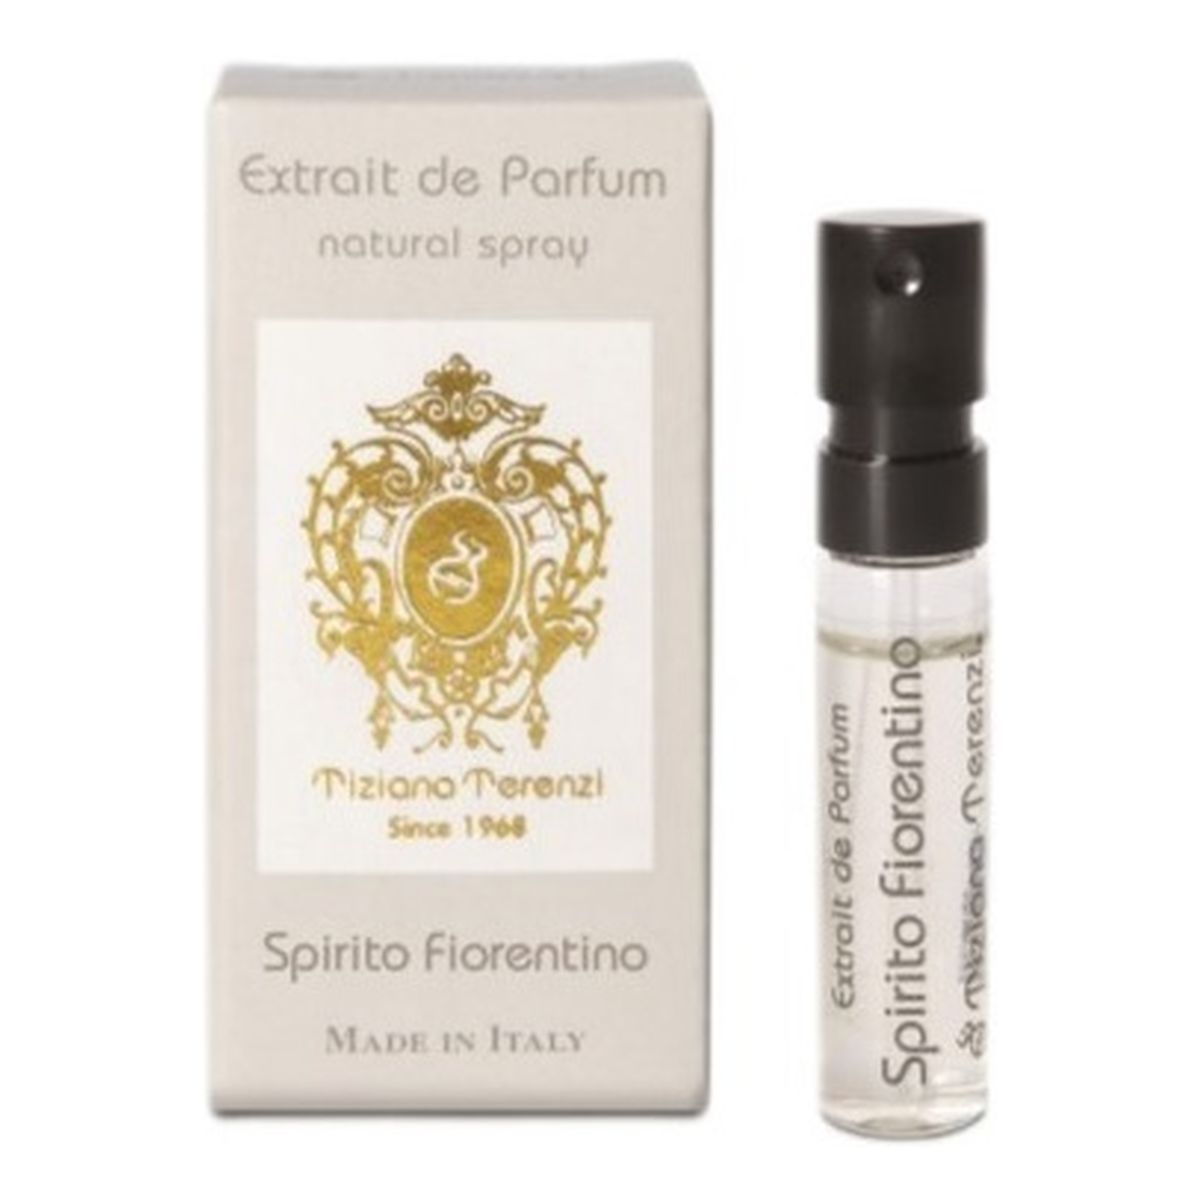 Tiziana Terenzi Spirito fiorentino ekstrakt perfum spray próbka 1.5ml